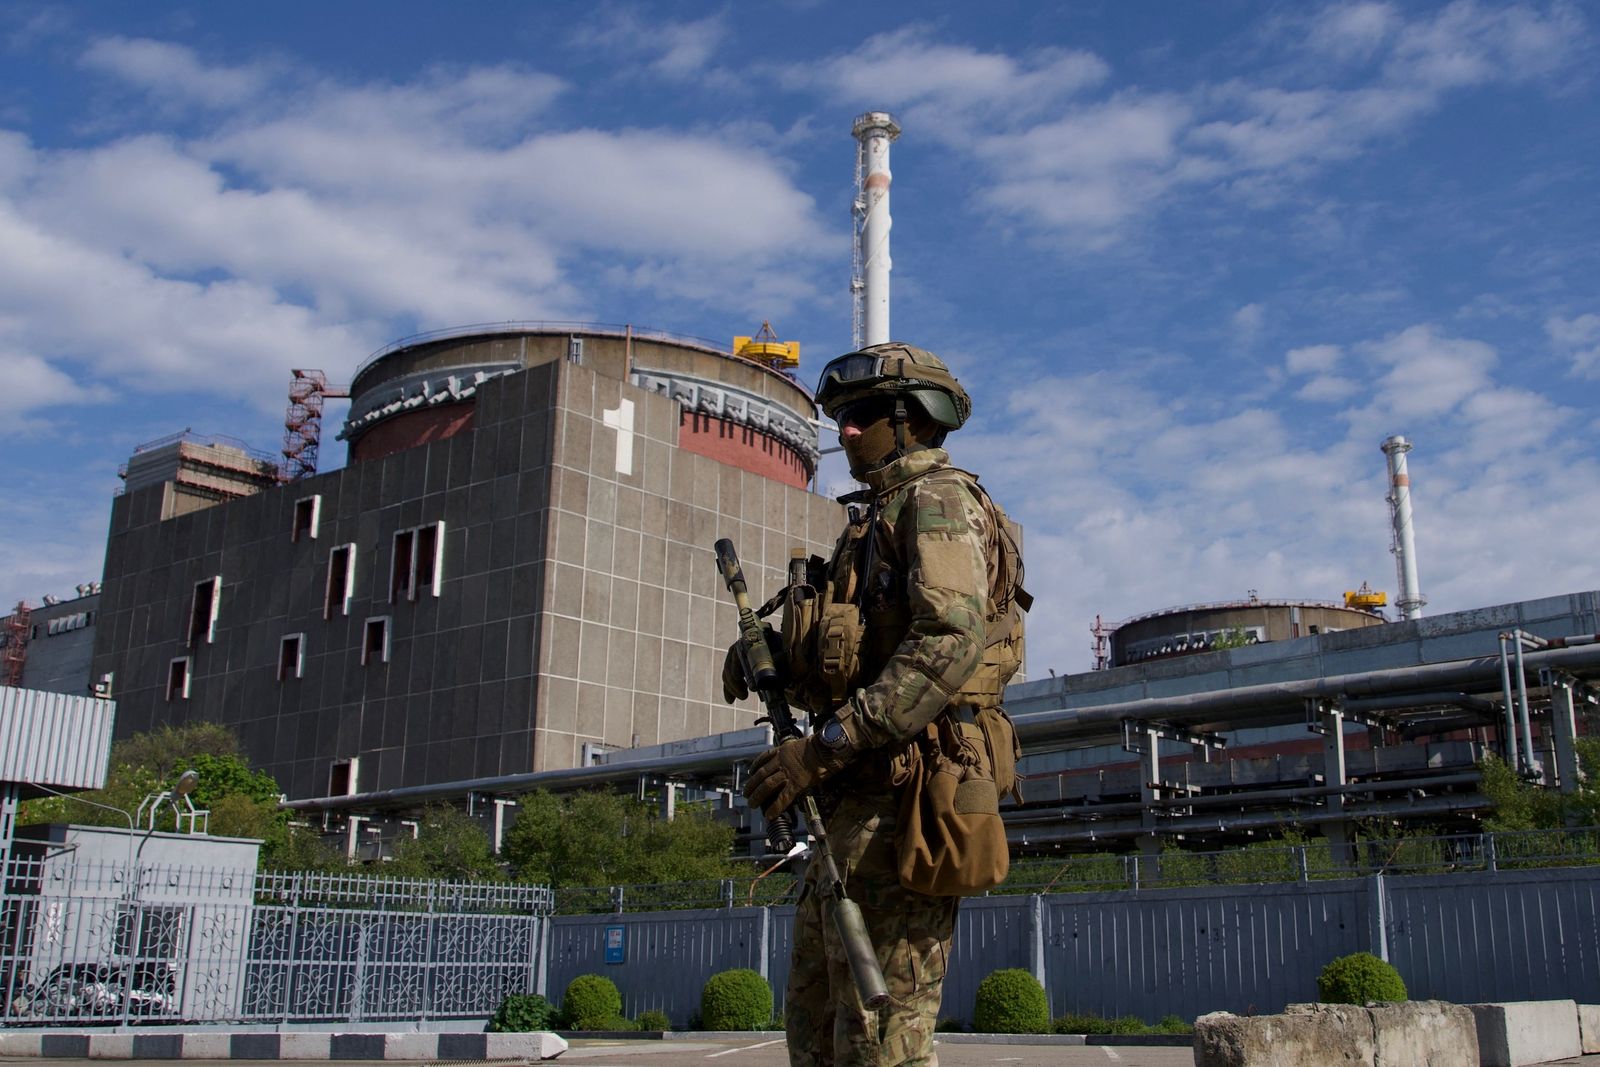  جندي روسي يقف بالقرب من محطة  زابوريجيا للطاقة النووية  - AFP